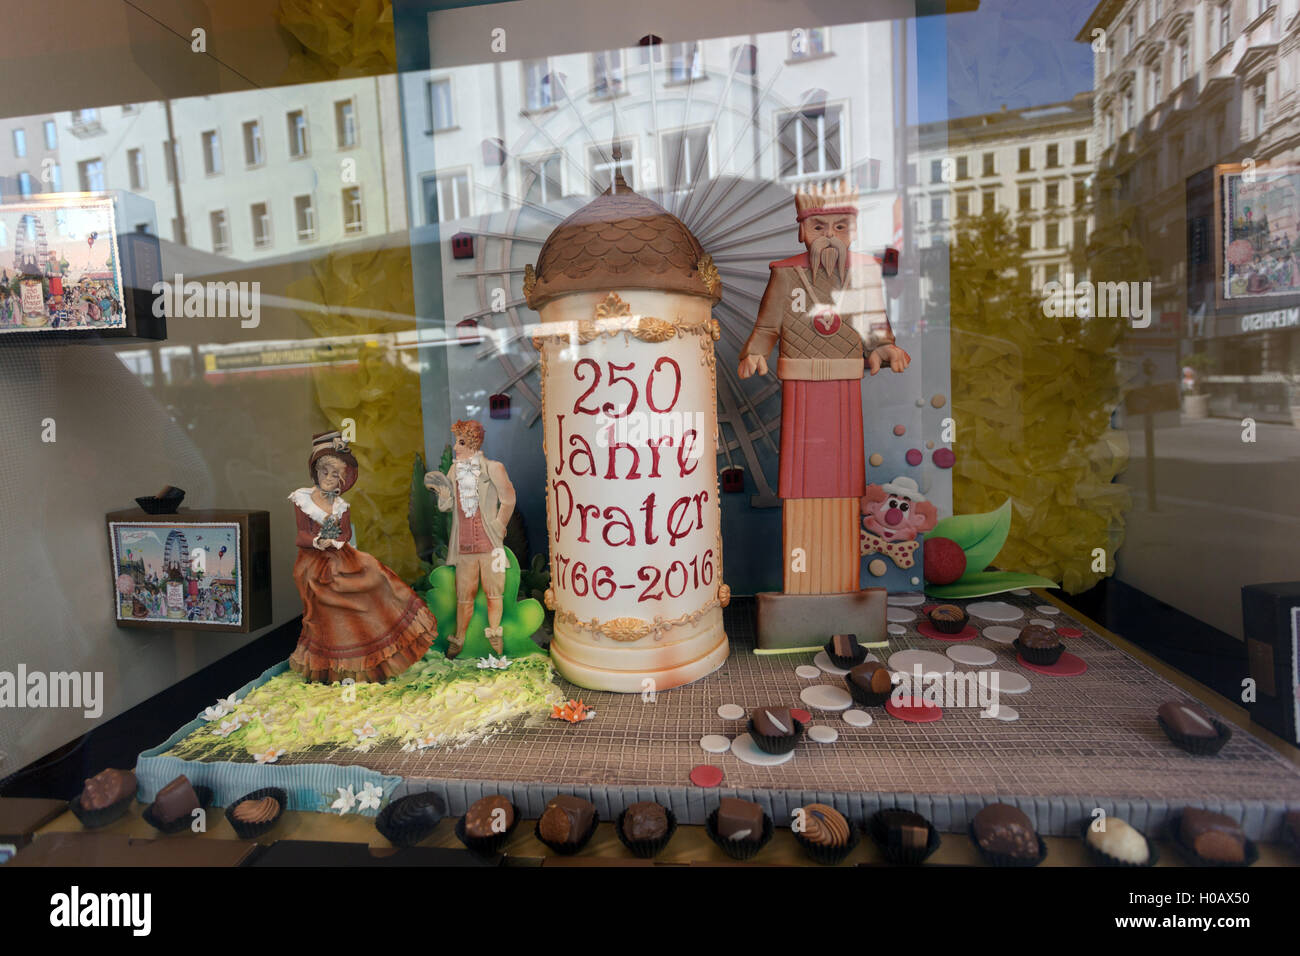 Pâtisserie vitrine dans le centre-ville de Vienne, Autriche Banque D'Images